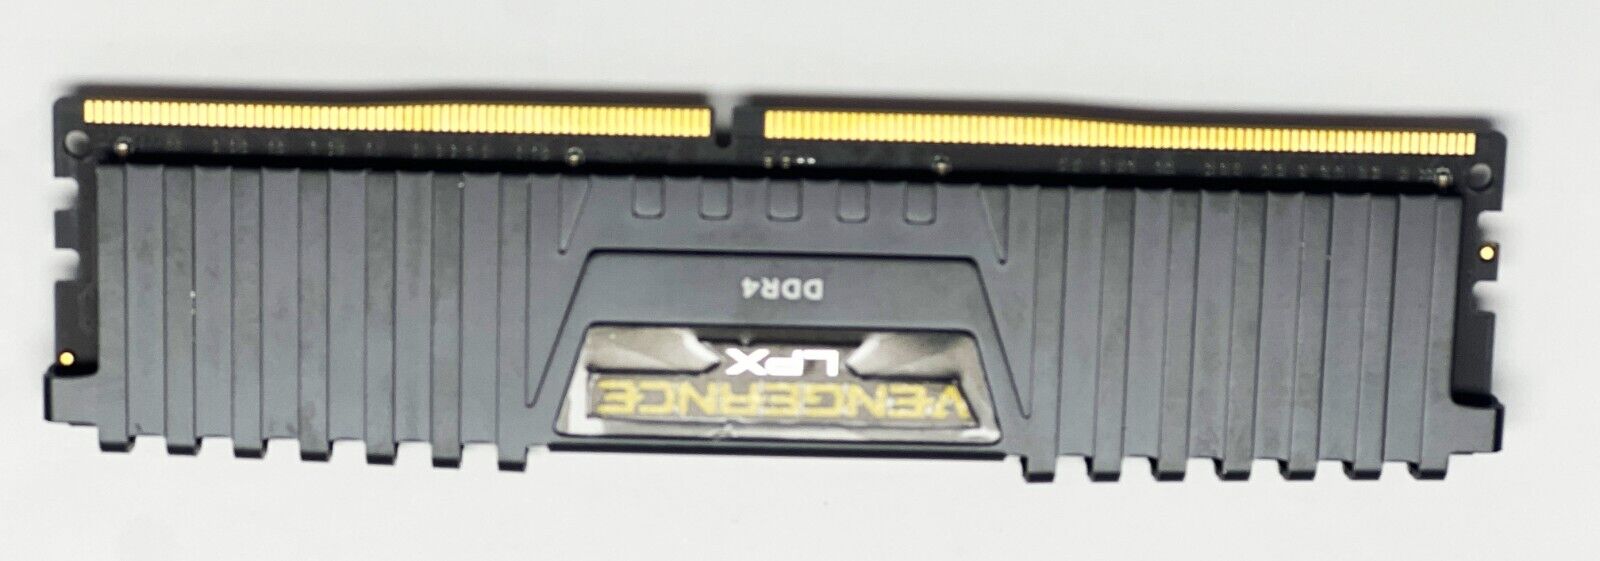 LOT OF 50 16GB DDR4 Corsair Vengeance LPX  3000 Mhz 1.35V Desktop PC Memory RAM